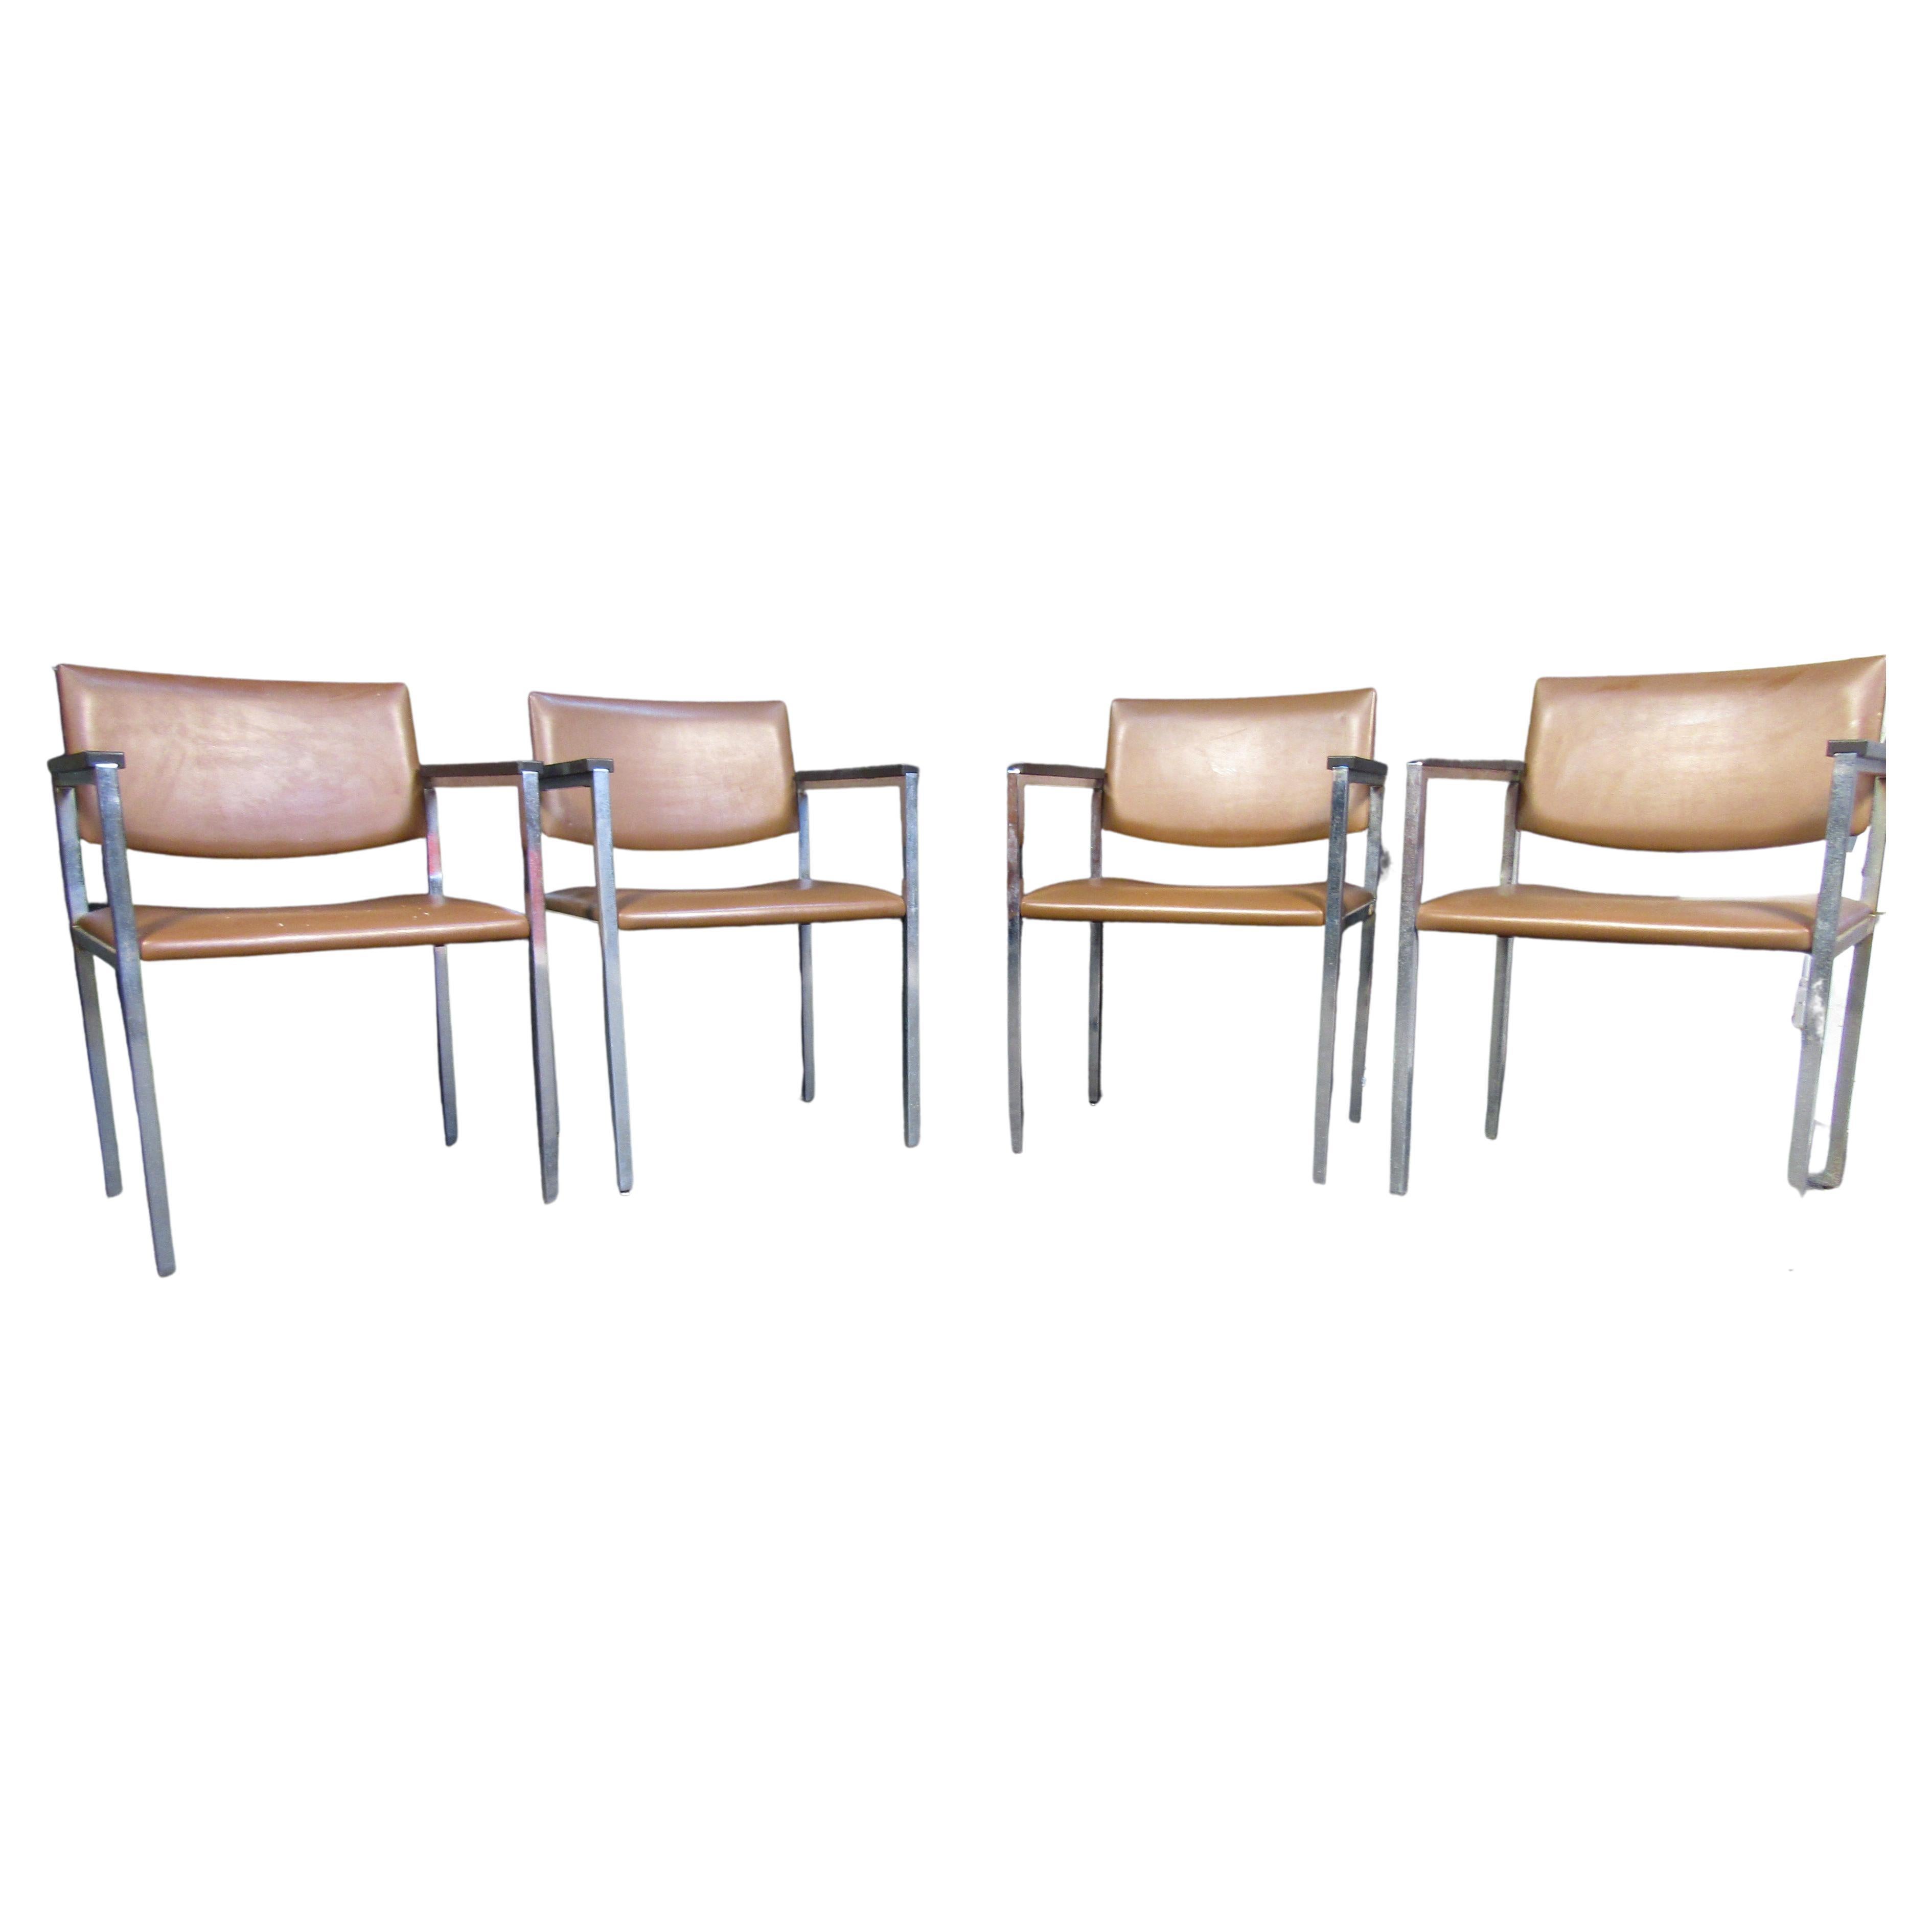 Un design minimal composé d'un cadre chromé et de sièges en vinyle brun permet à ces chaises vintage de Steelcase d'être polyvalentes dans un grand nombre de contextes. Fabriquée aux États-Unis. Veuillez confirmer la localisation de l'article auprès